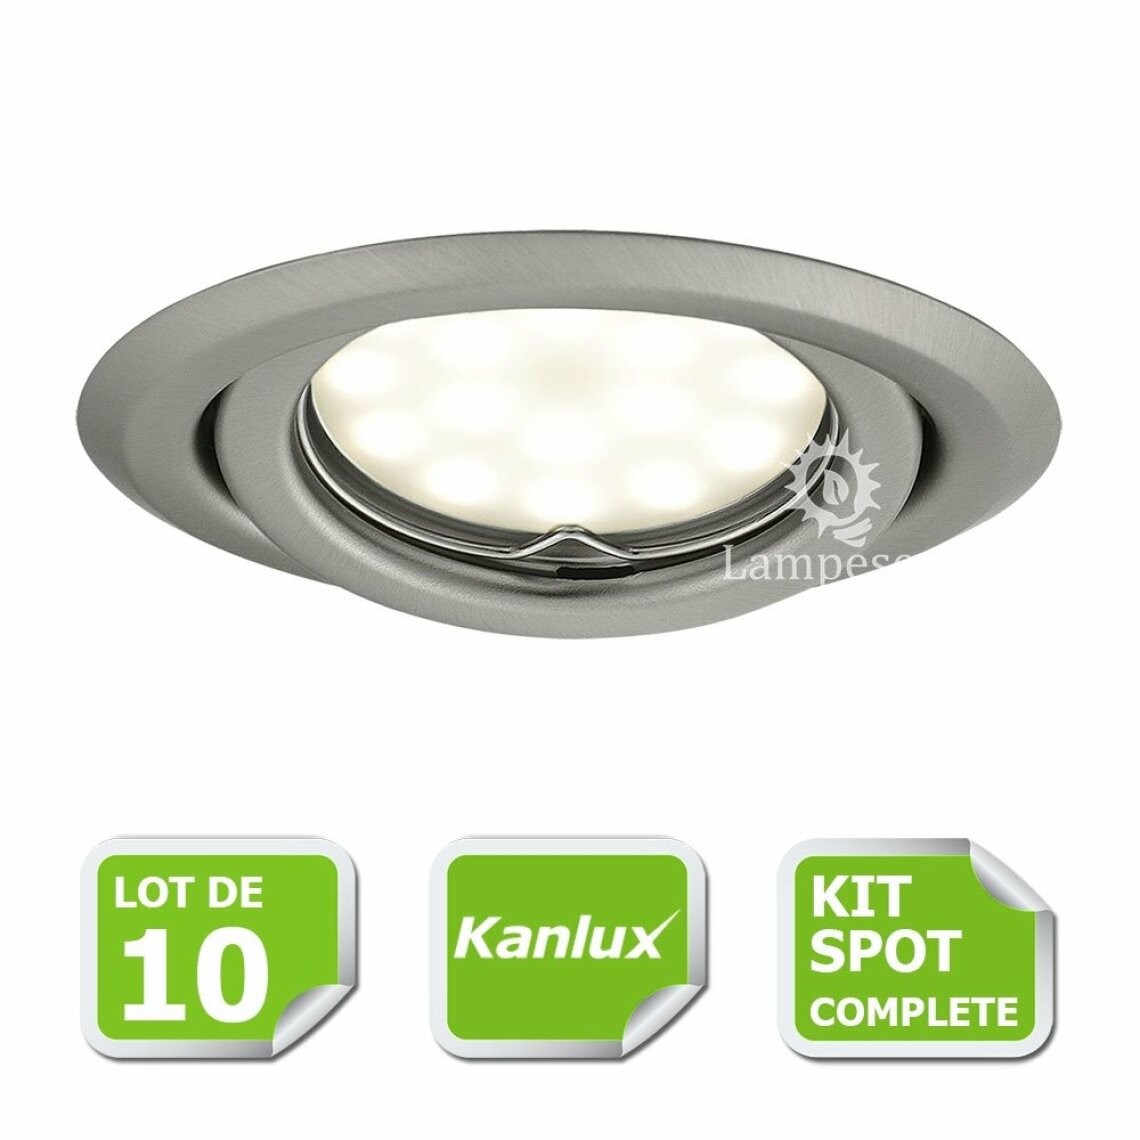 Kanlux - Kit complete de 10 Spots encastrable chrome mat orientable marque Kanlux avec GU10 LED 5W 3000K blanc chaud - Boîtes d'encastrement